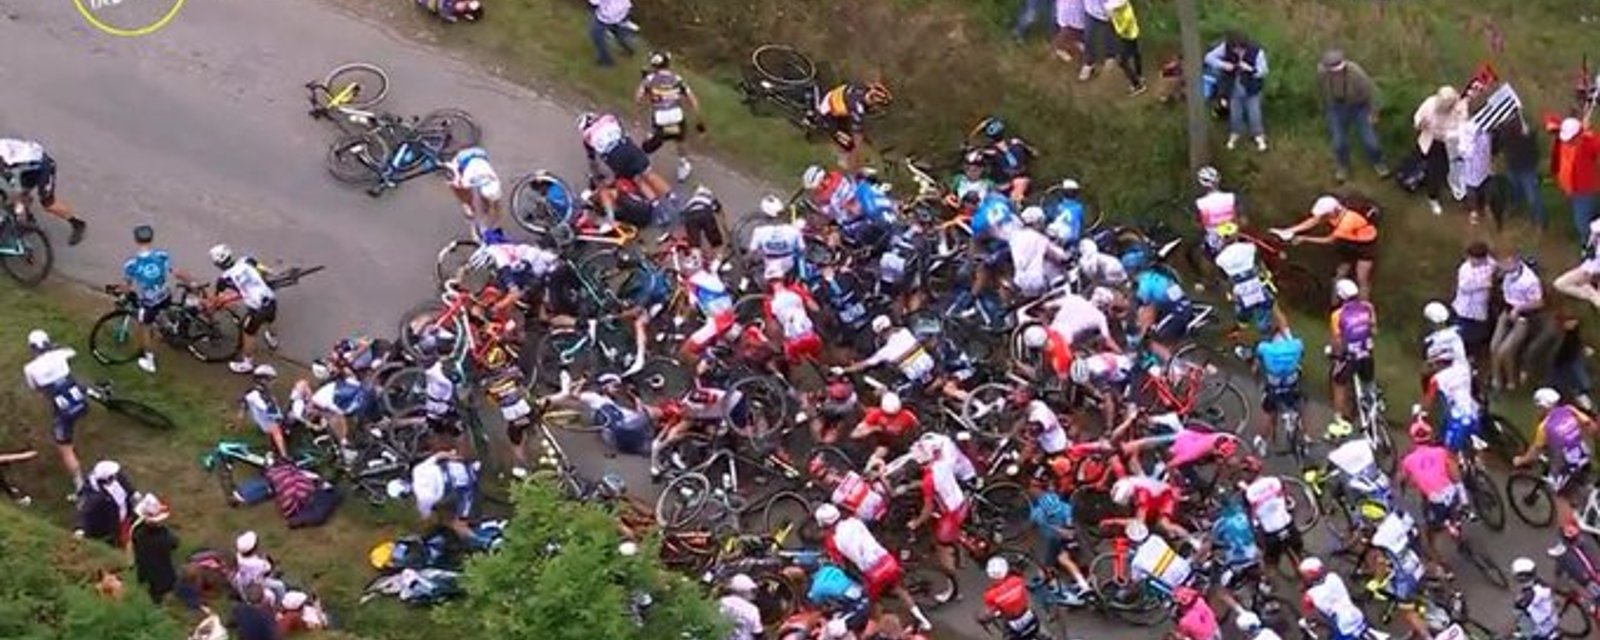 Une spectatrice cause un gros accident au tout début du Tour de France (VIDÉO)